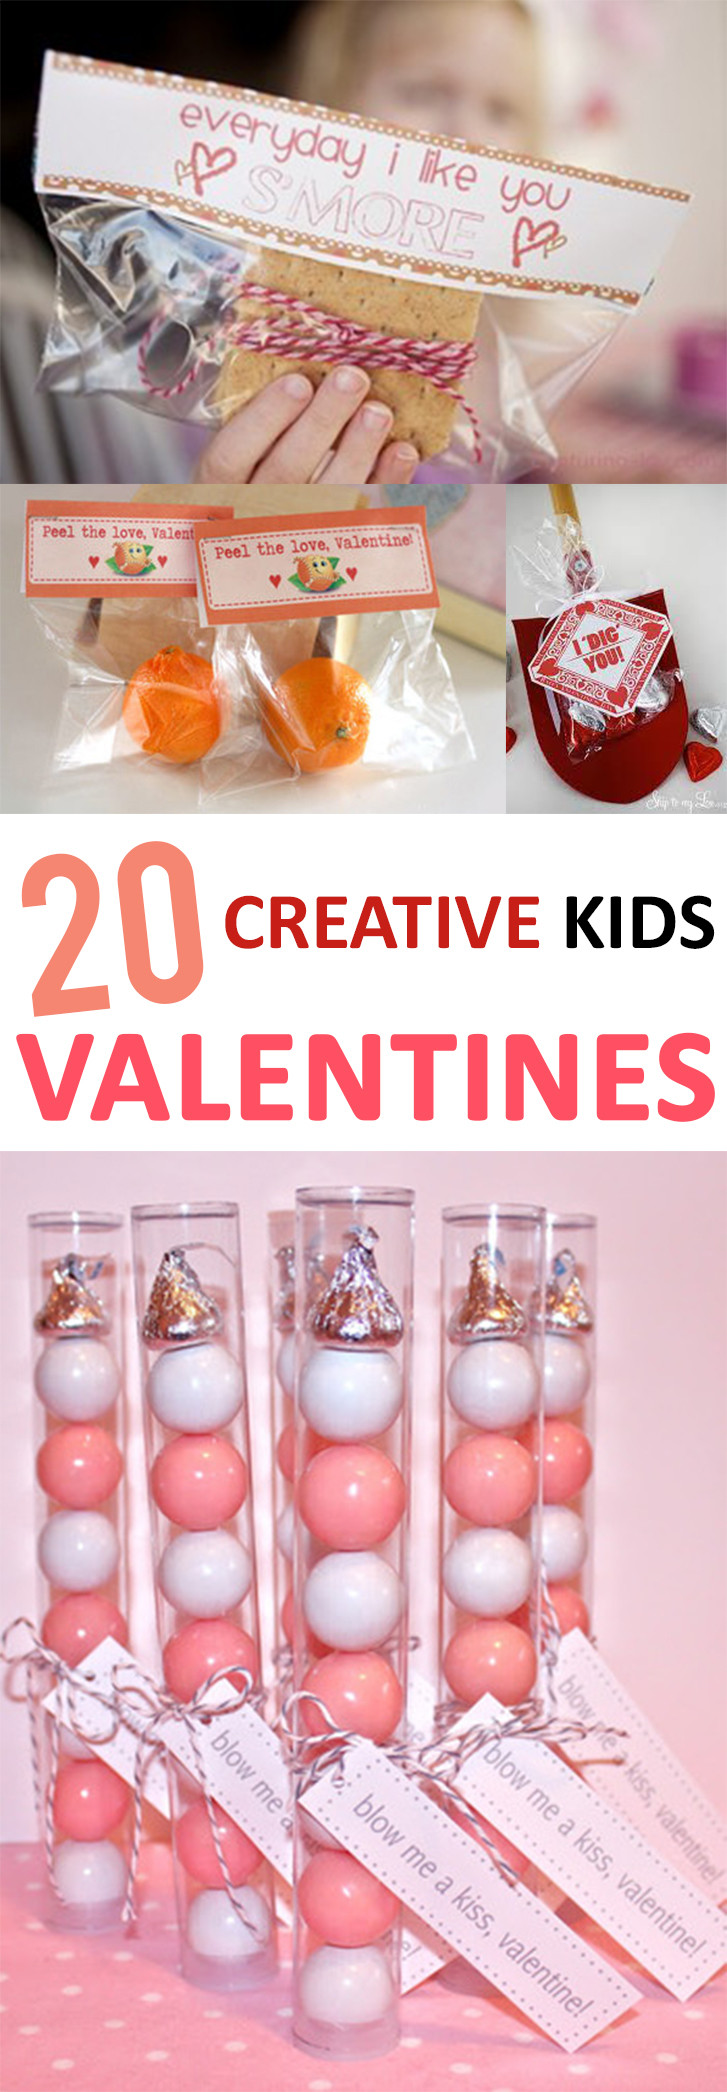 Valentine'S Day Creative Gift Ideas
 20 Creative Kid s Valentines